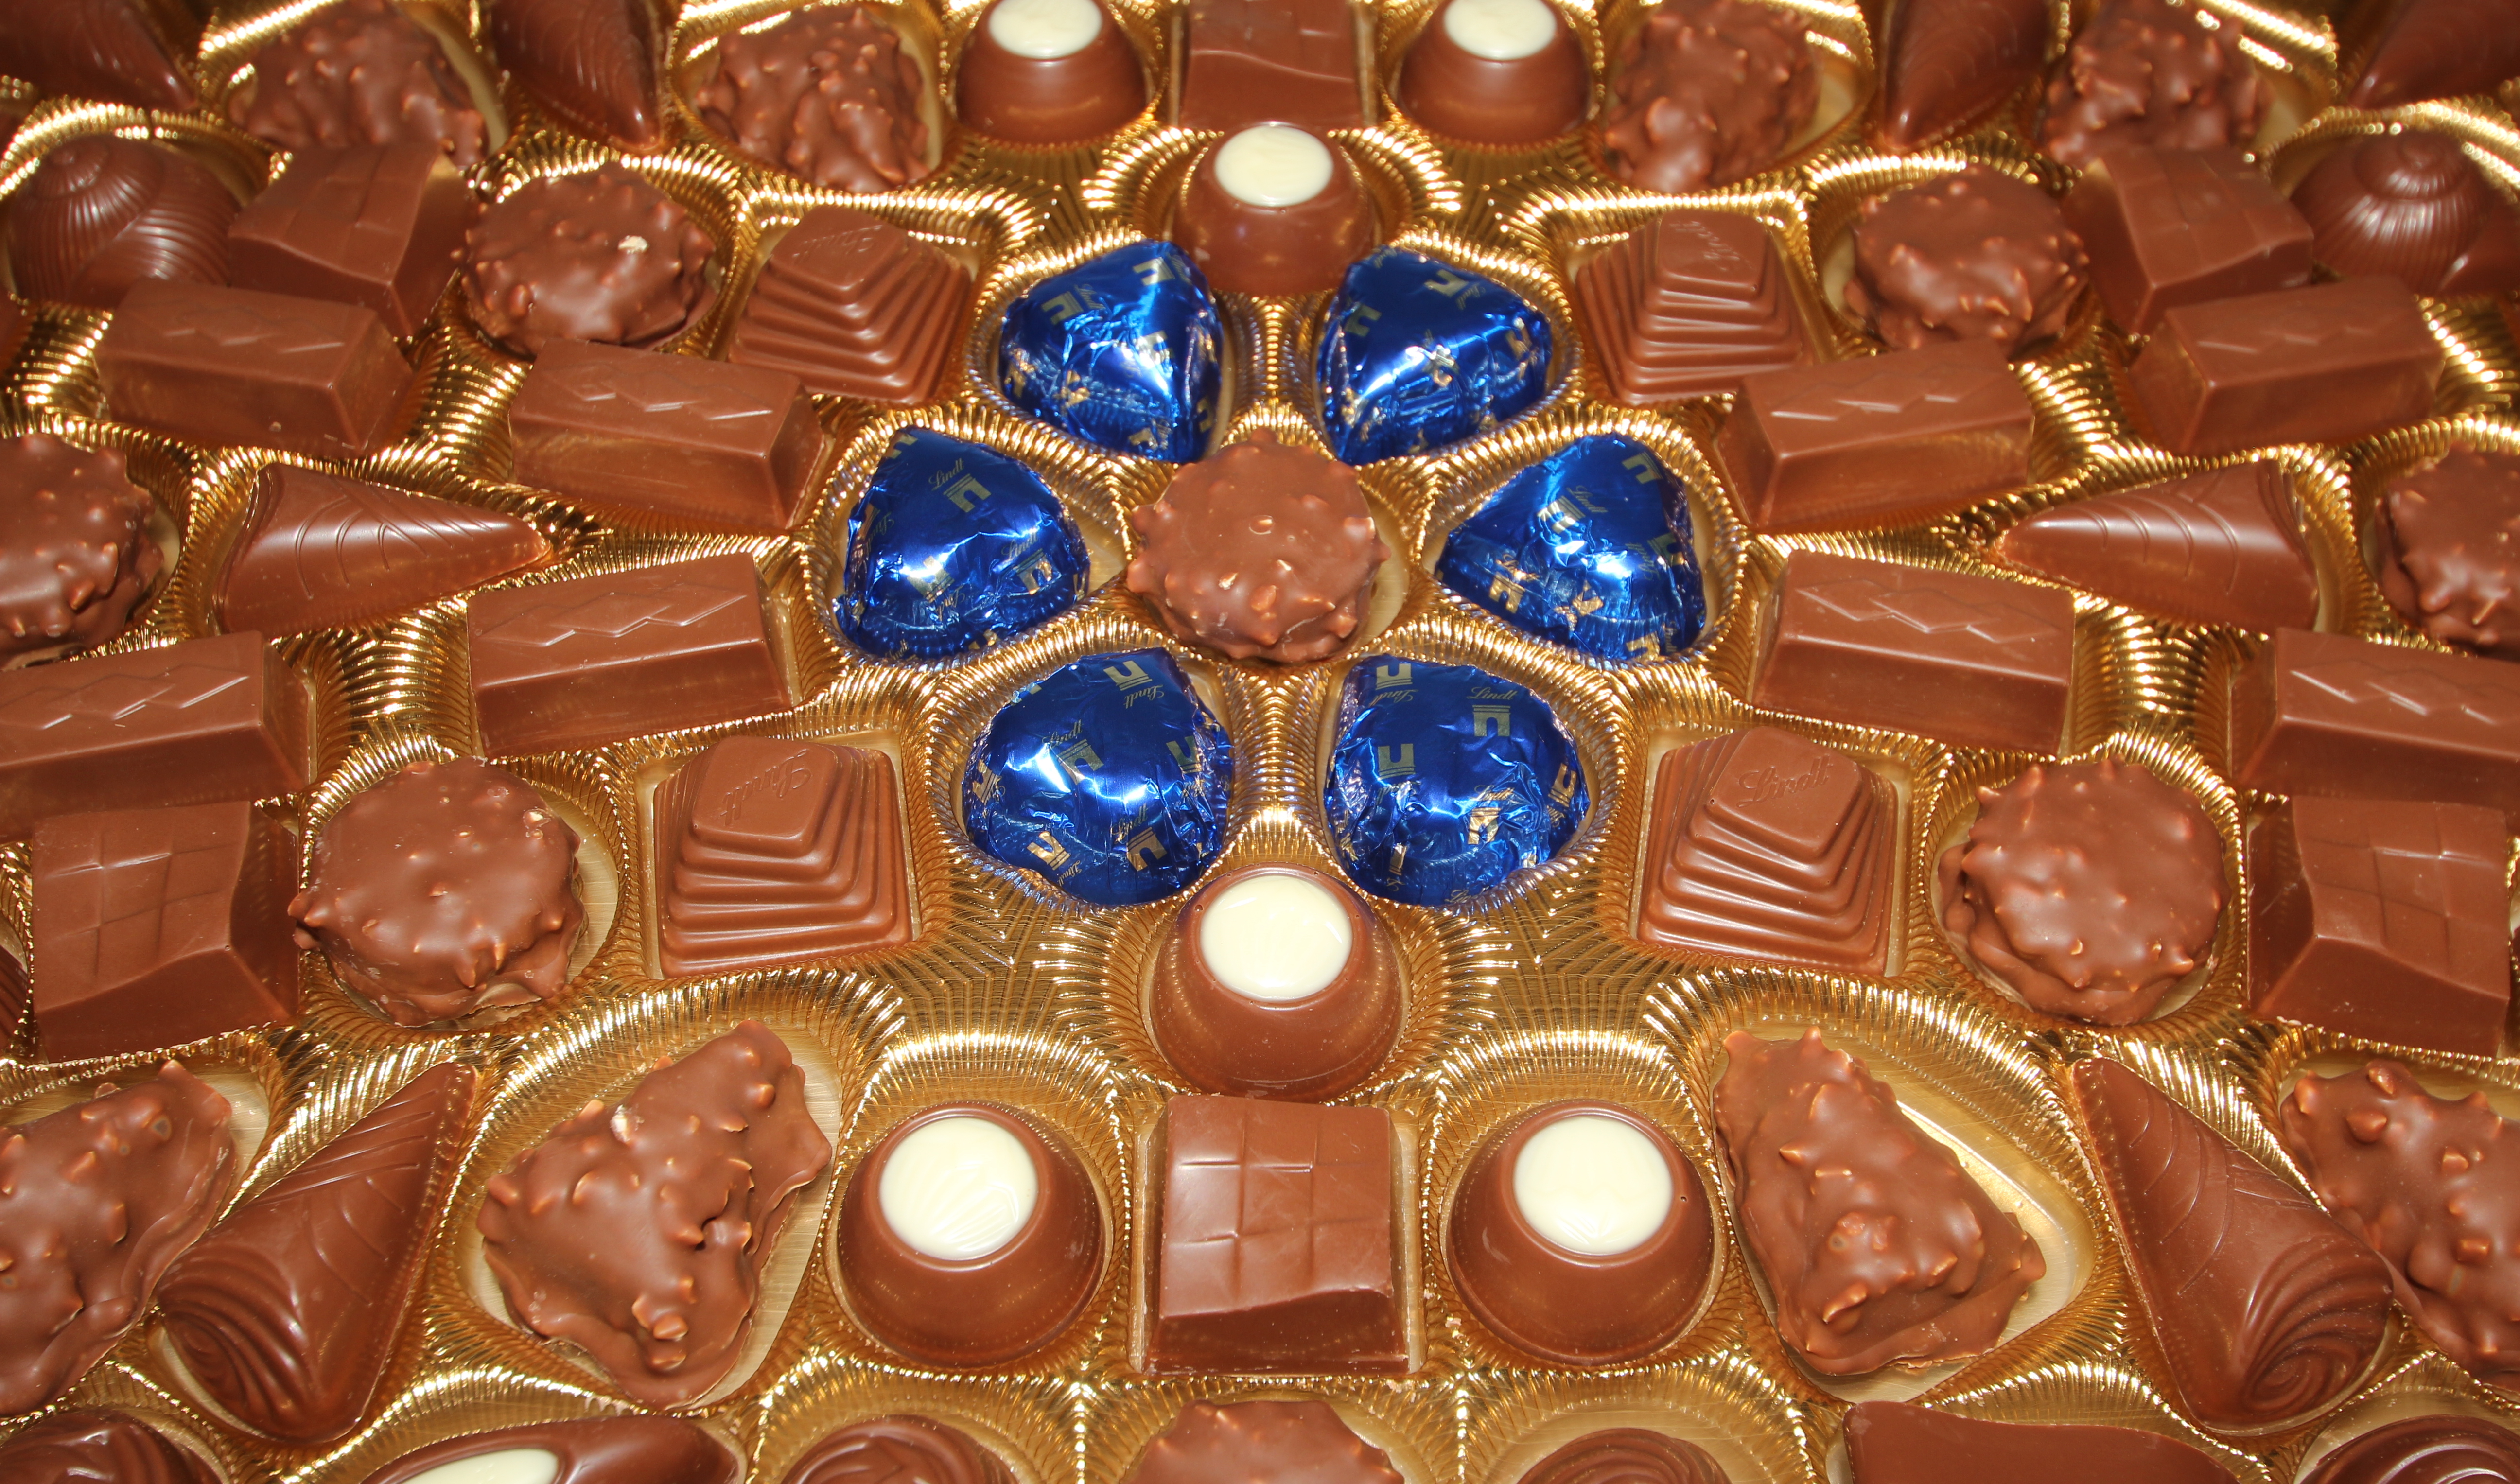 File:Boite de chocolats Champs-Elysees Lait Lindt - 03.jpg